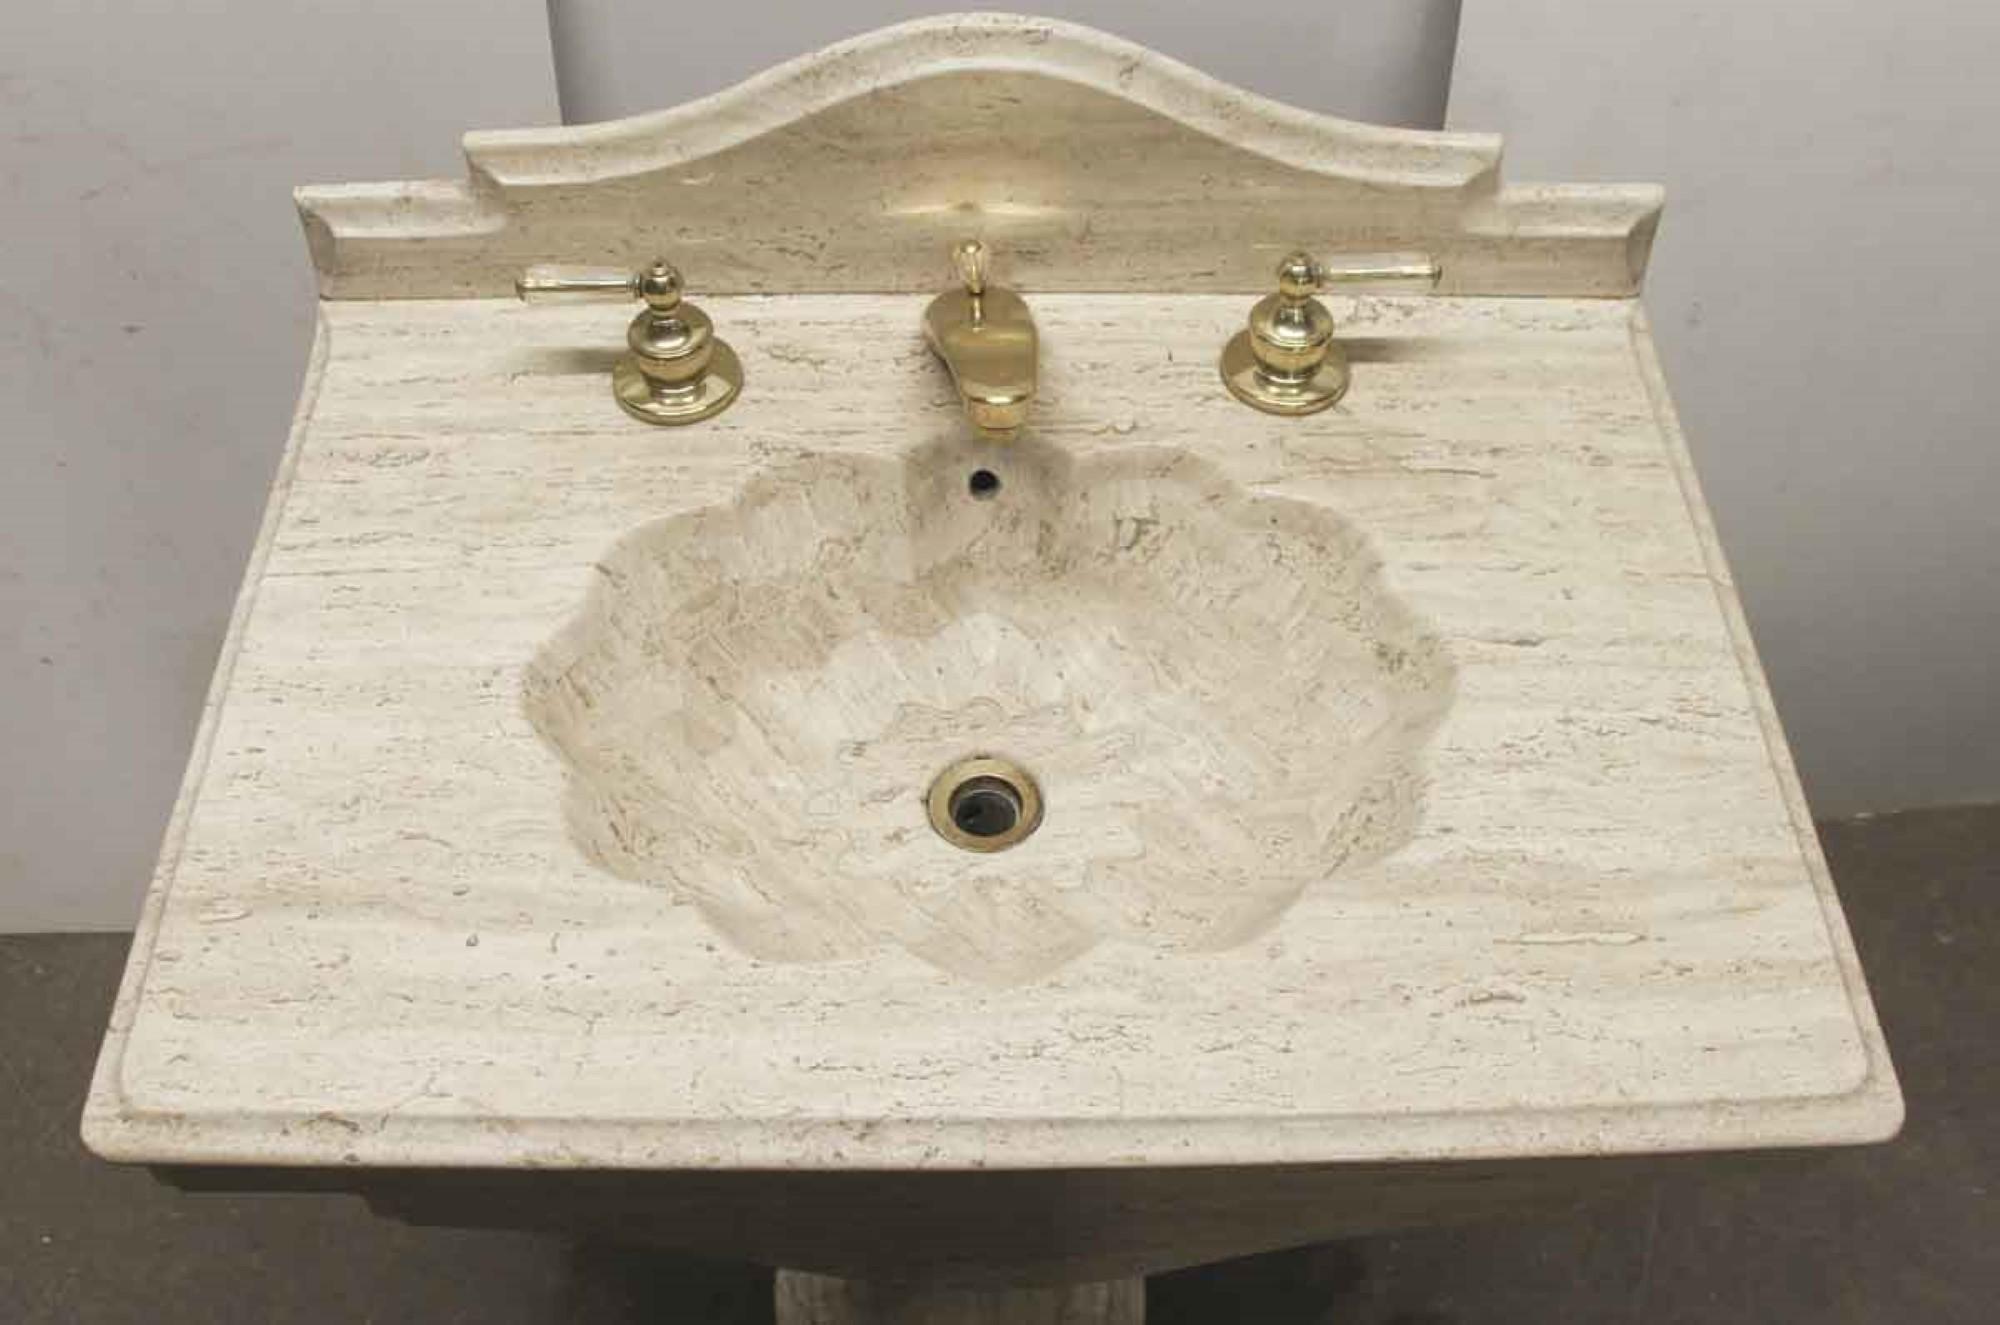 pedestal sink with backsplash